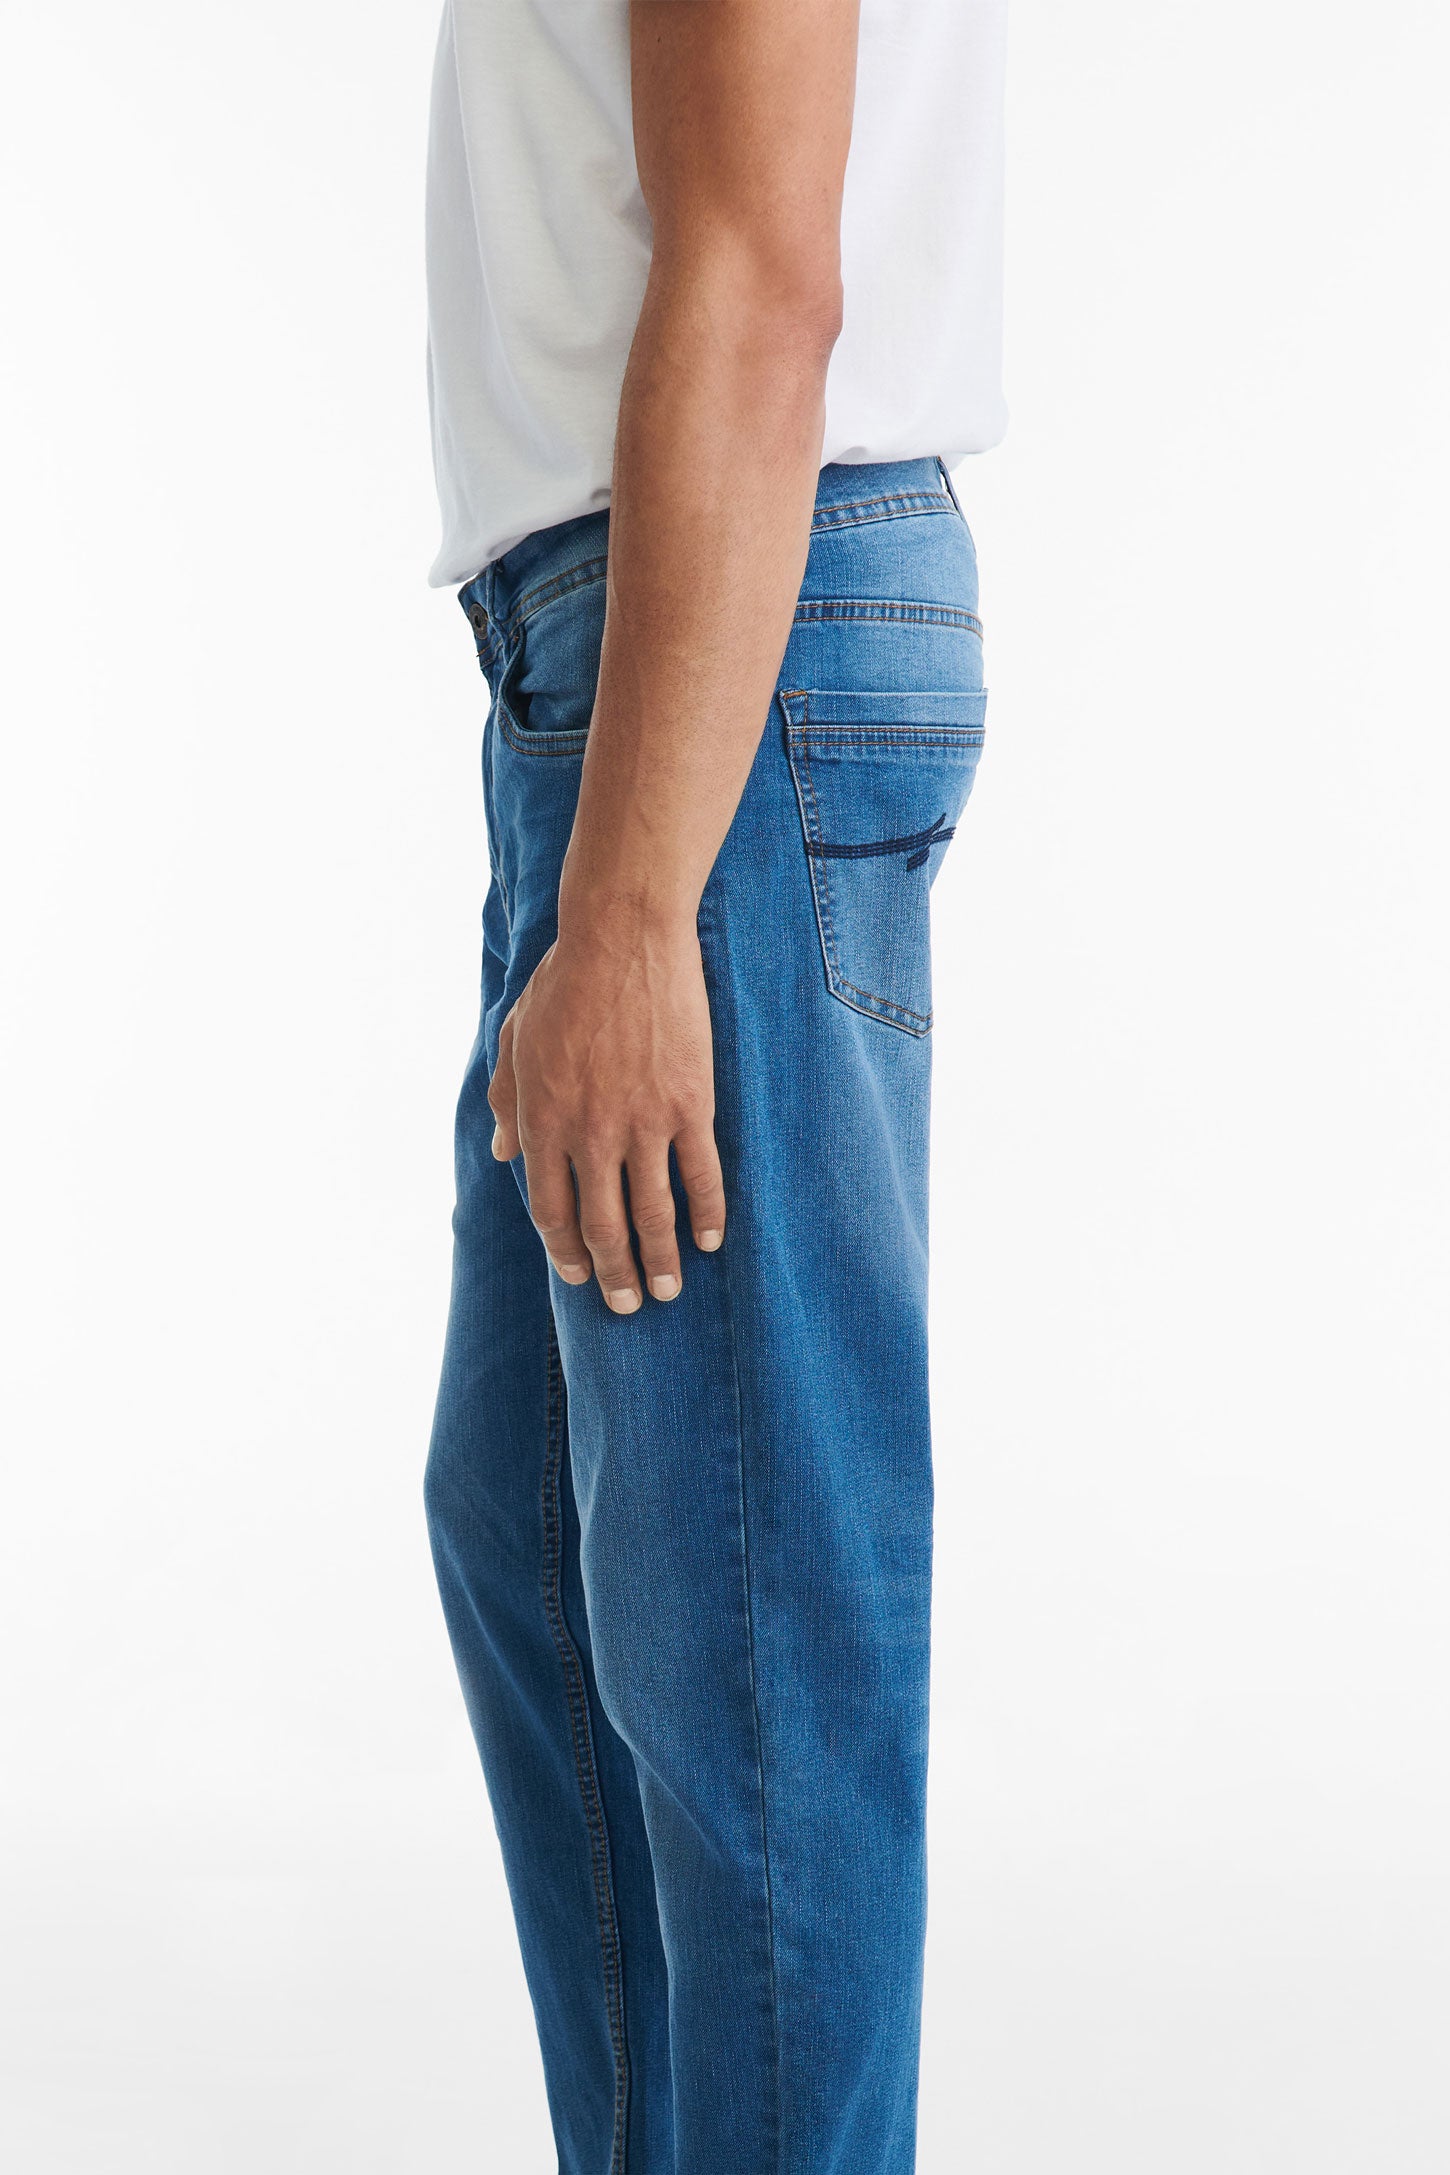 Jeans 5 poches coupe confort 32'' - Homme && INDIGO FONCÉ MOY